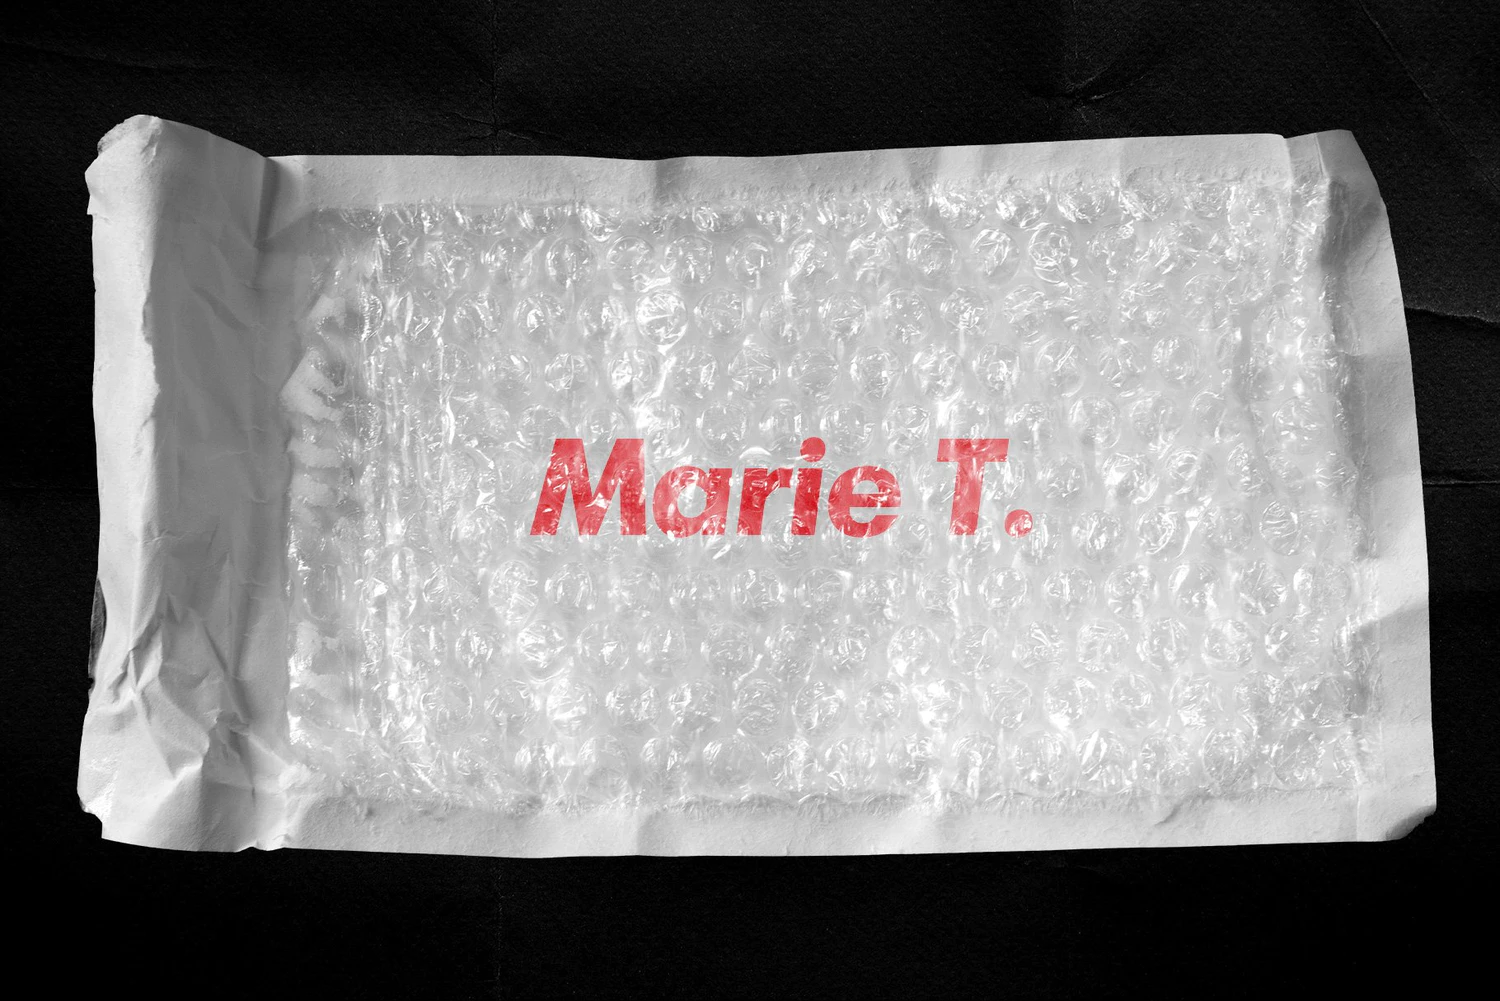 2458 潮流复古撕碎全息标签贴纸塑料袋胶带图片设计素材 Plastic Wrap & Torn Paper Bundle